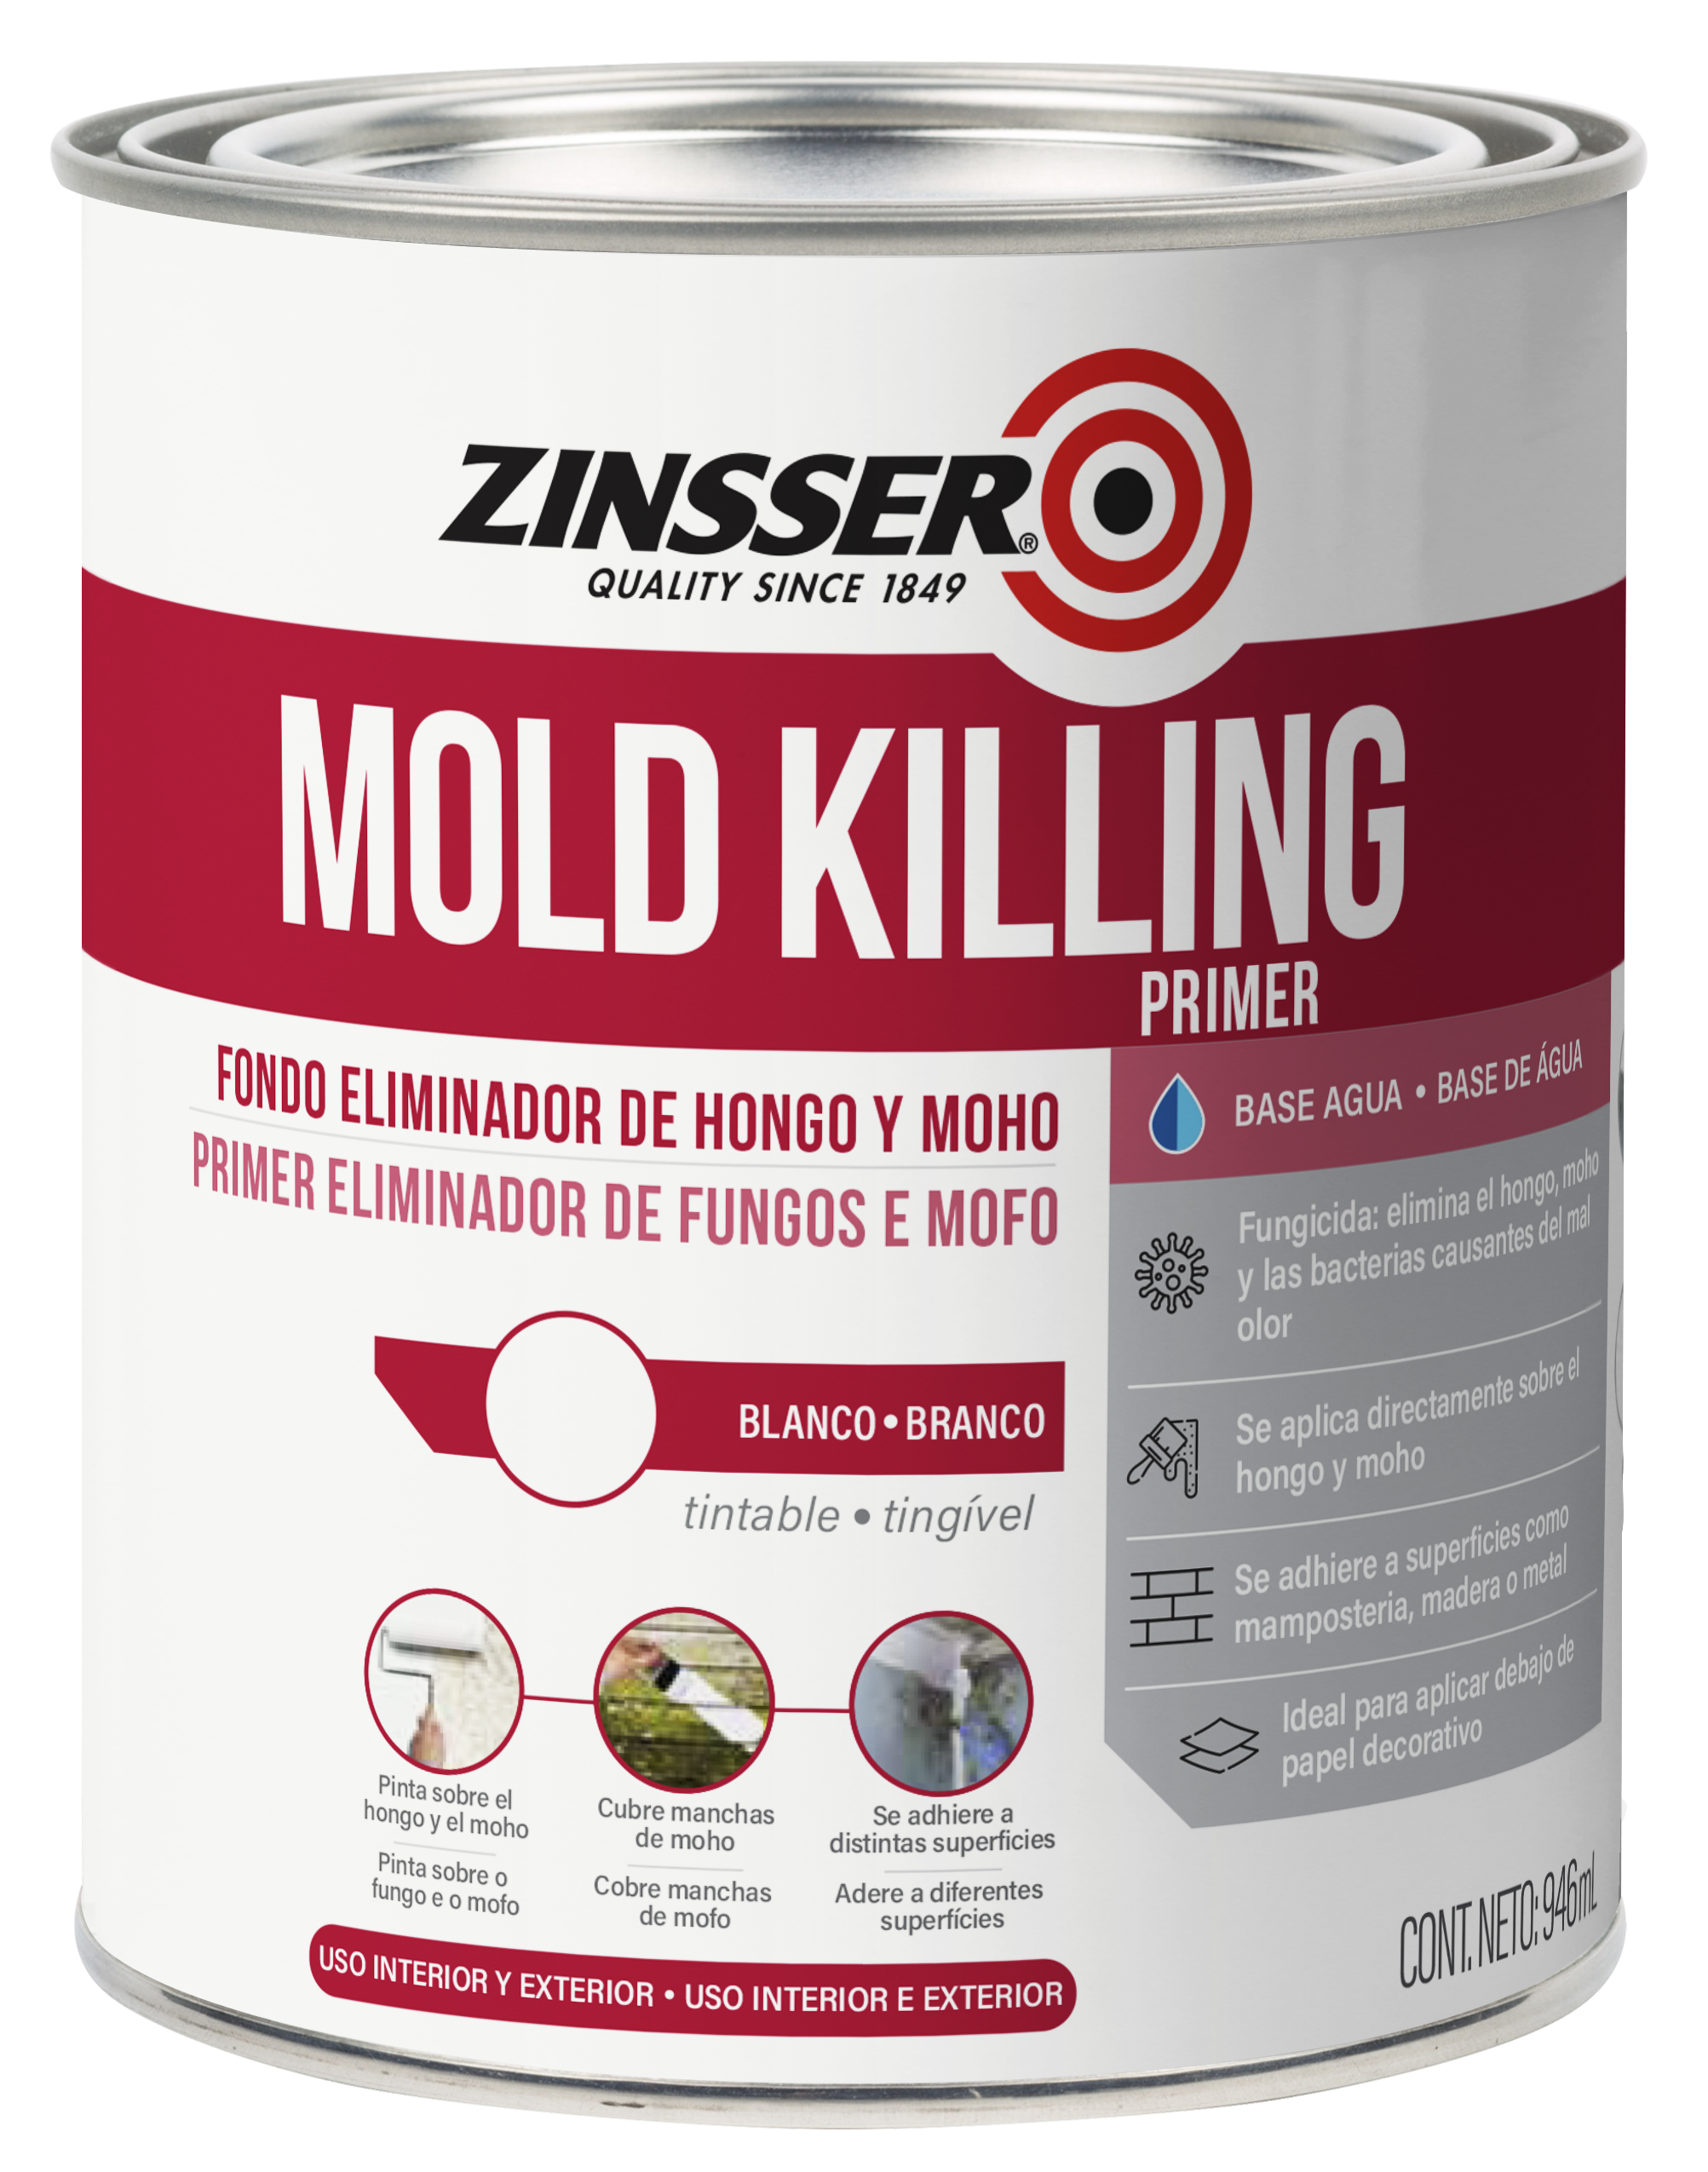 Zinsser Mold Killing Primer - Fondo Eliminador de Hongo y Moho